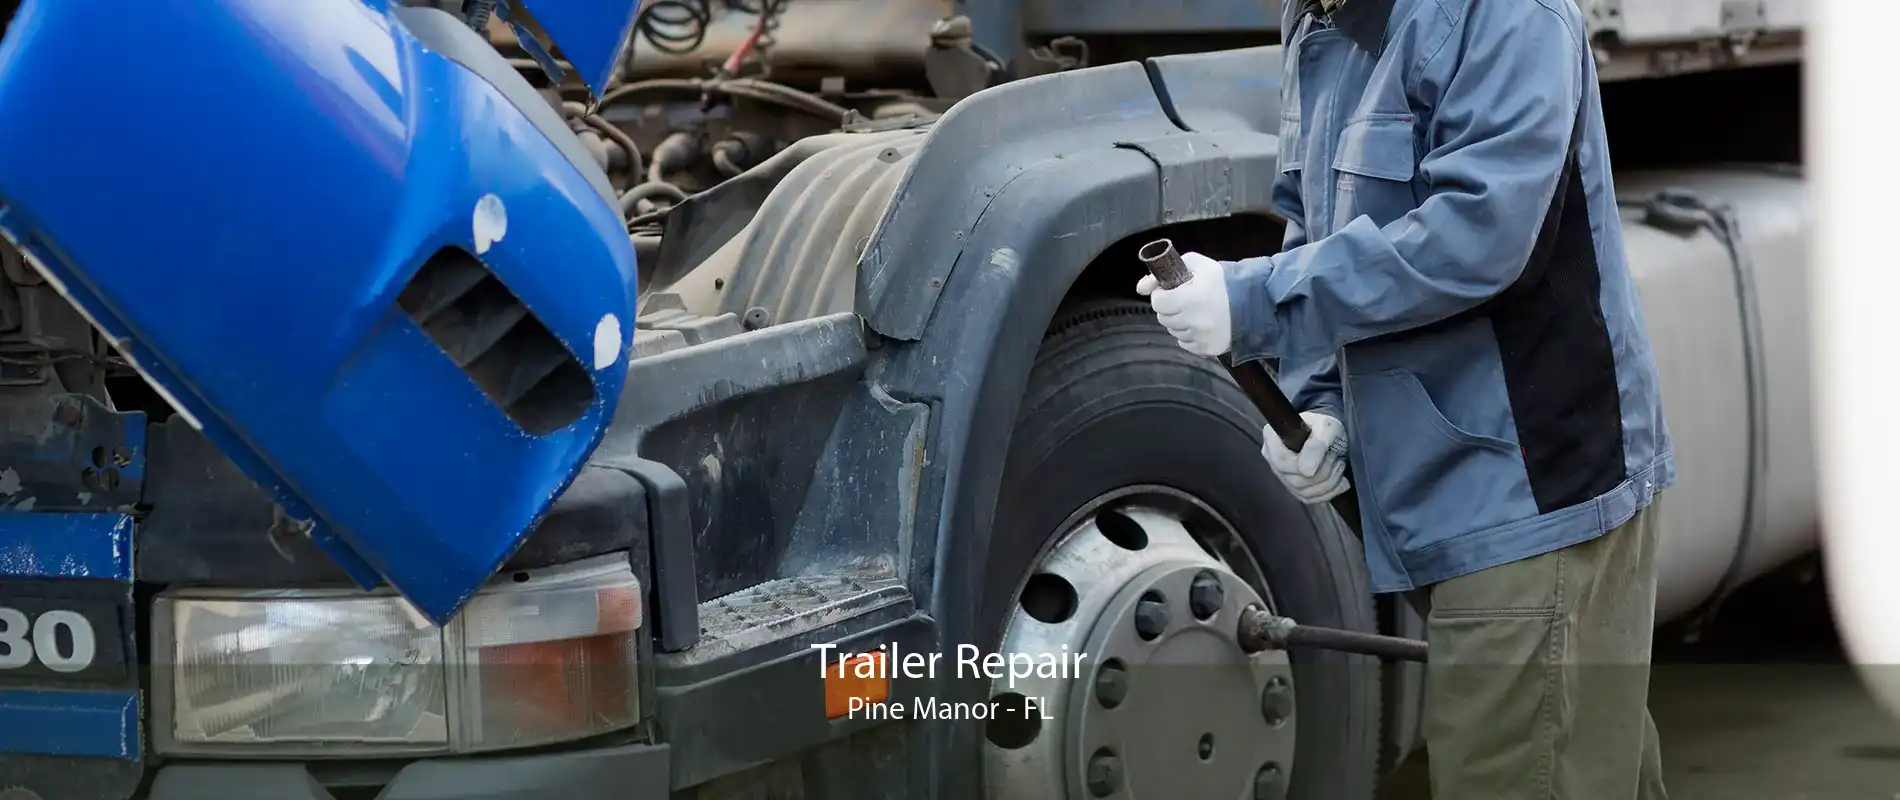 Trailer Repair Pine Manor - FL